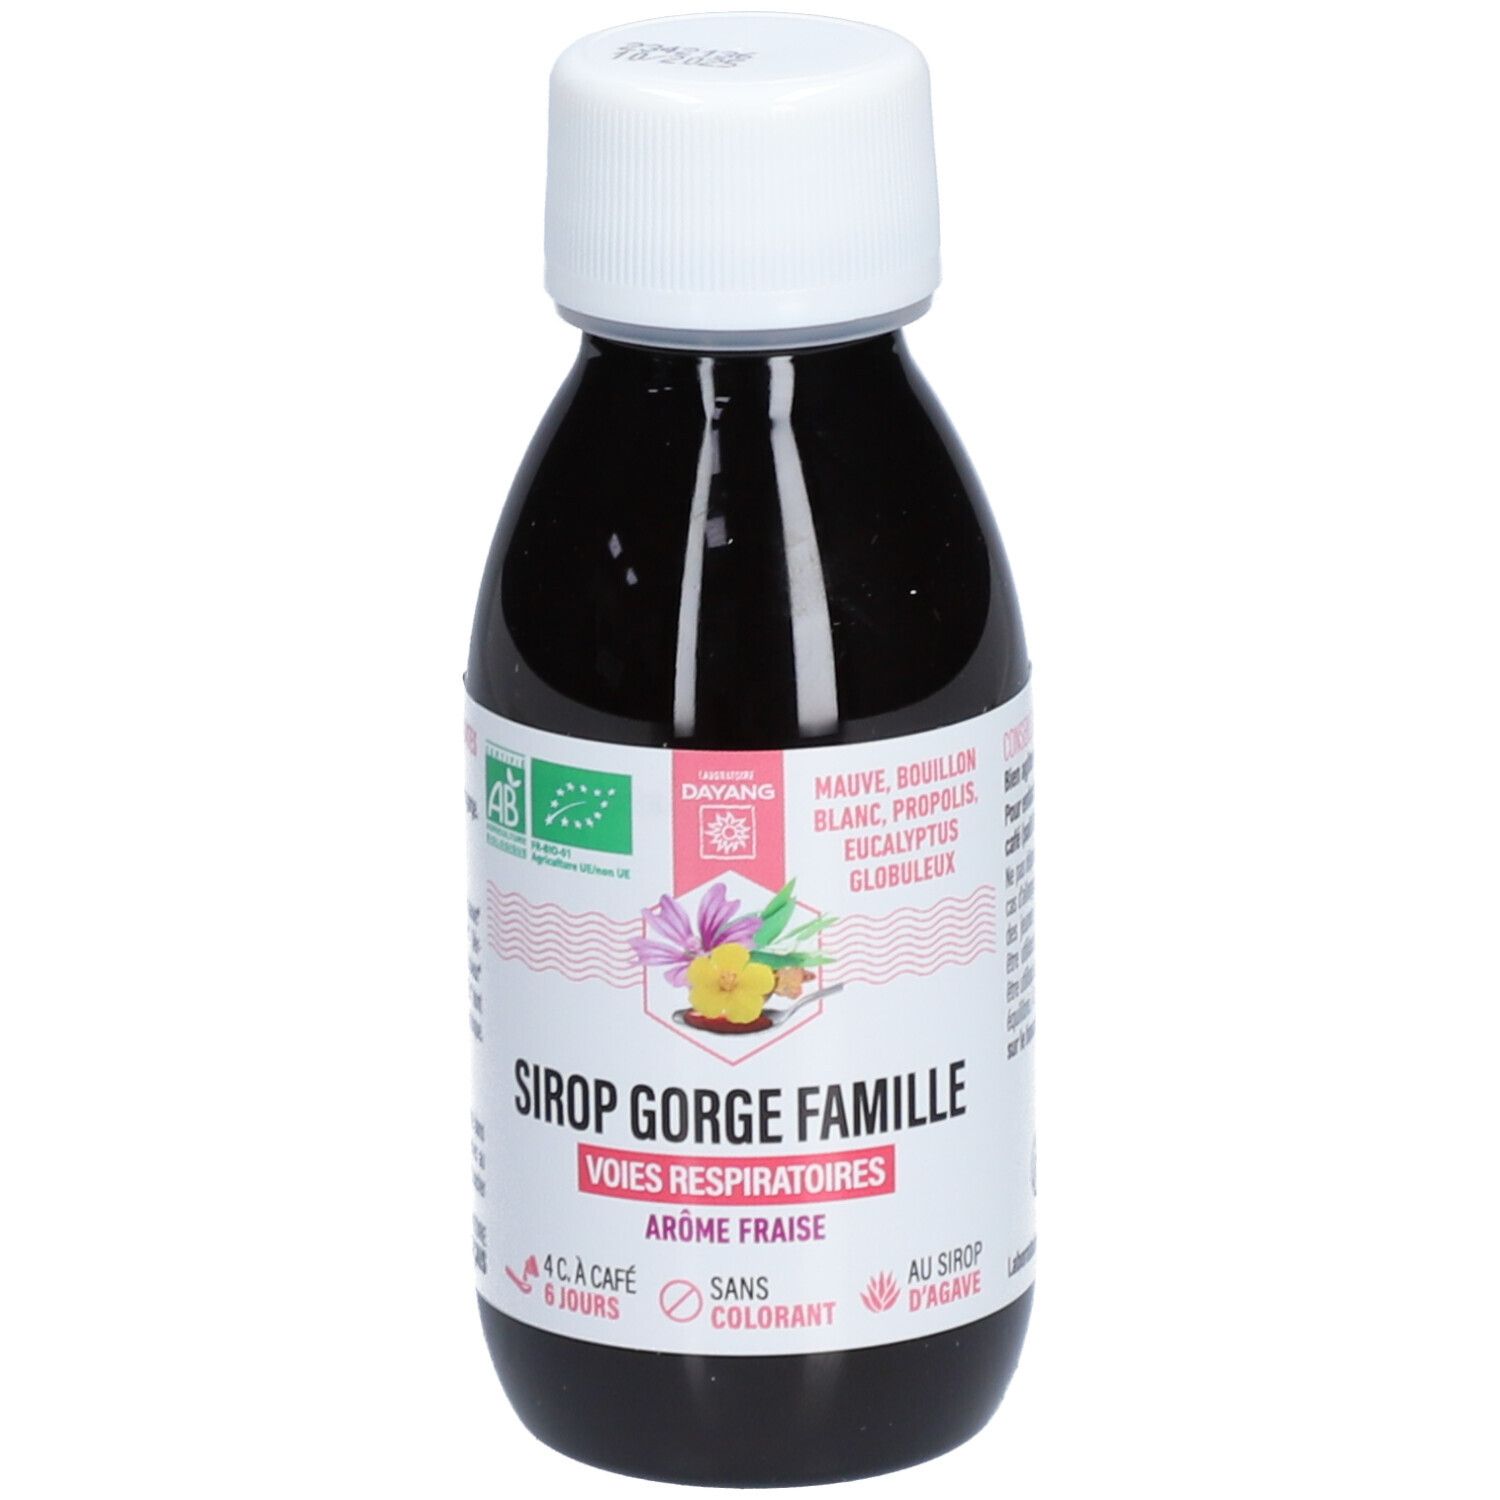 Dayang Sirop Gorge Famille - Sirop, complément alimentaire pour les voies respiratoires.